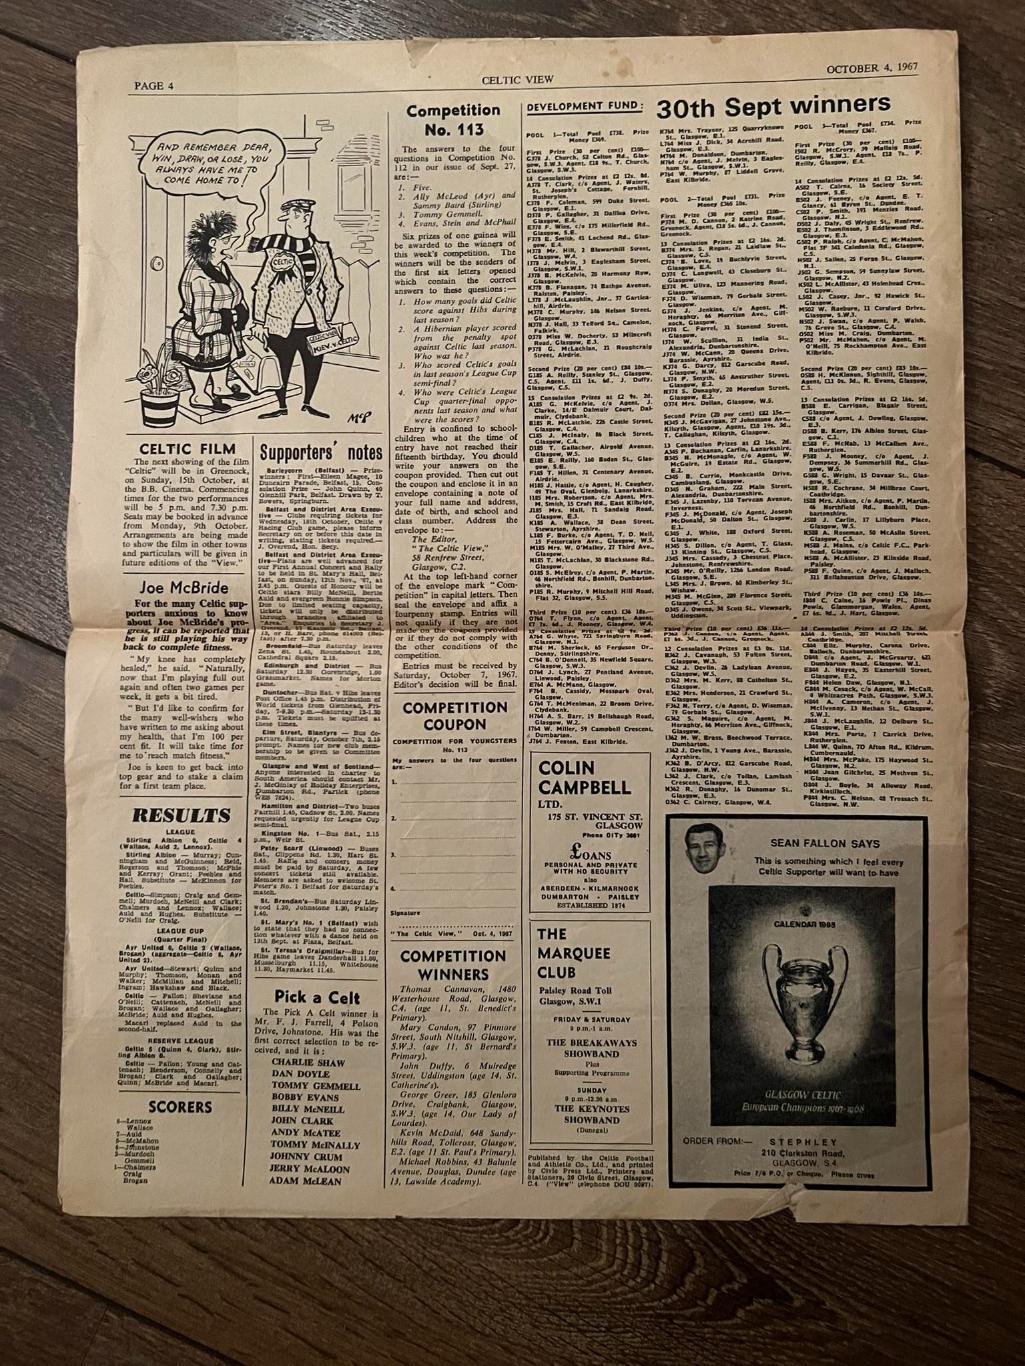 Газета Селтик (Celtic View) за 4.10.1967 в день игры с Динамо Киев 2